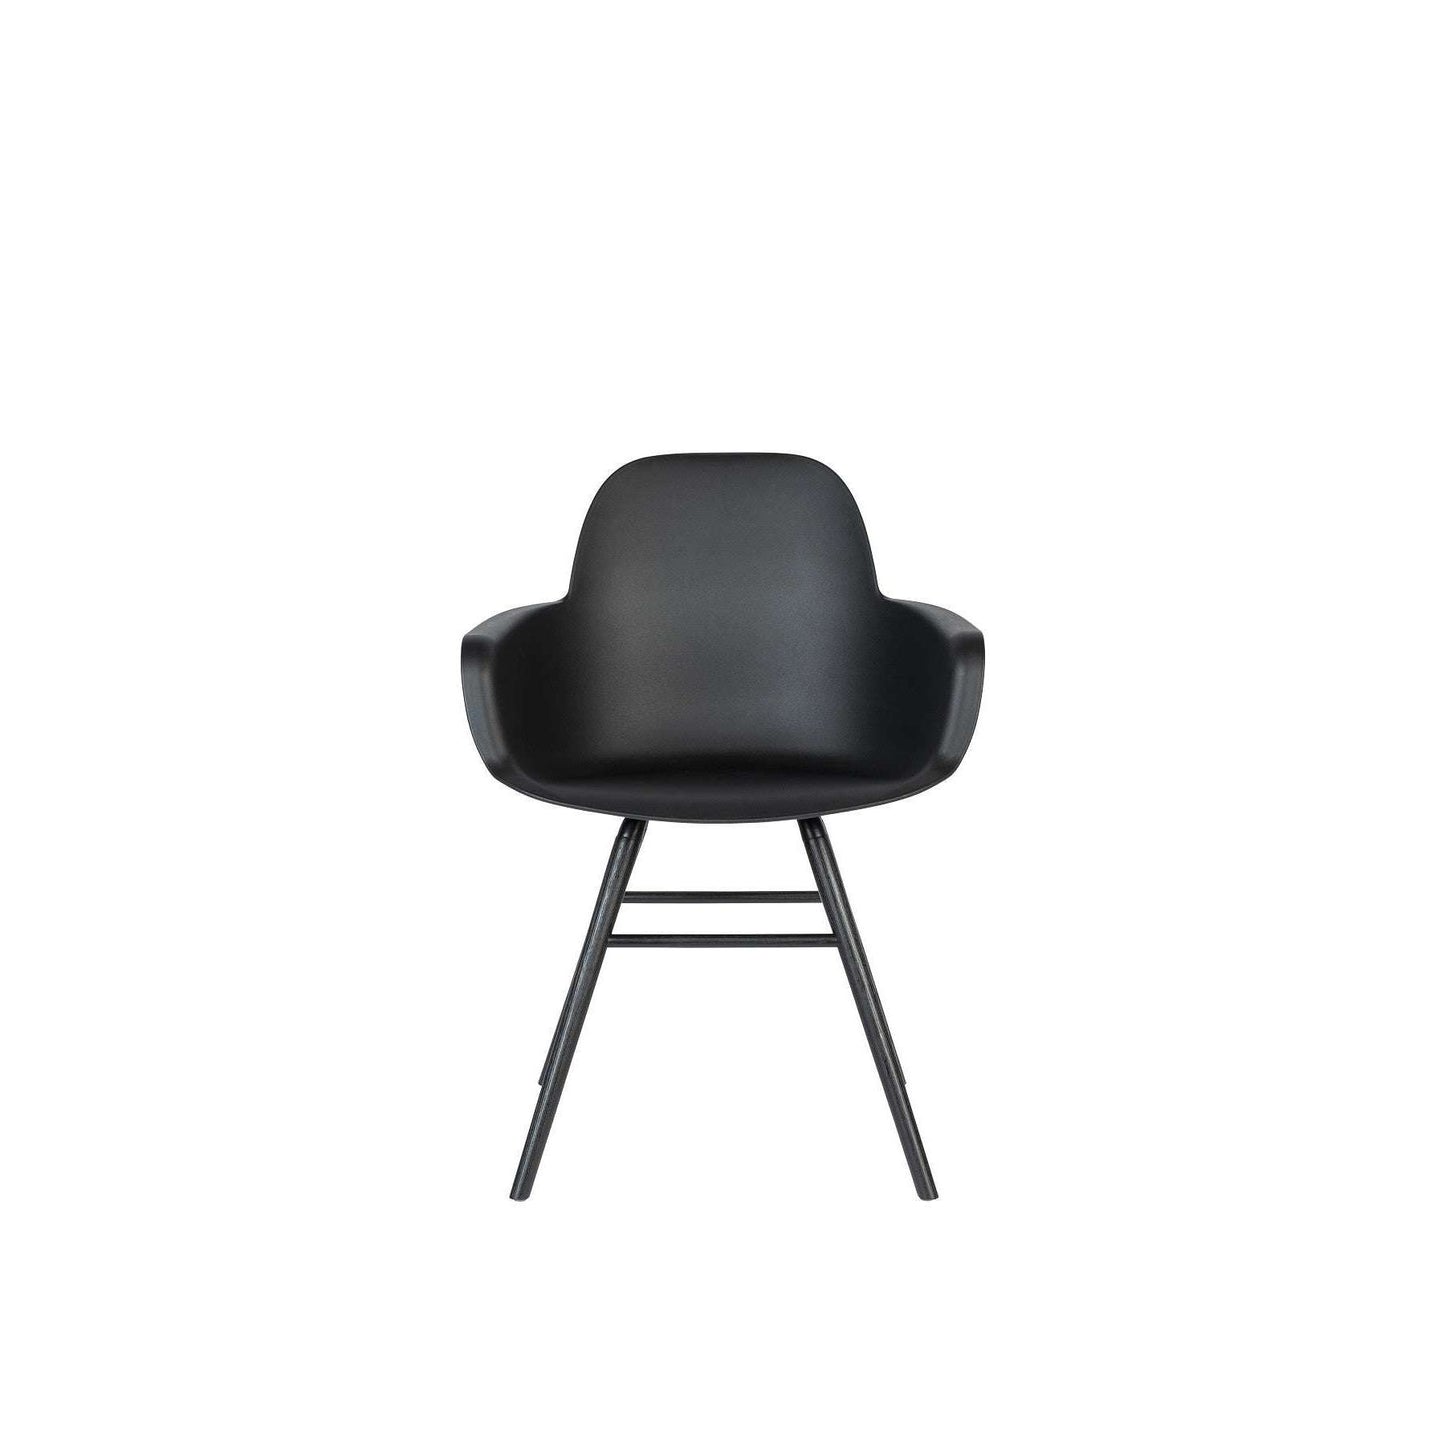 Zuiver stoel met armleuningen albert kuip all zwart 55 x 59 x 81,5 cm